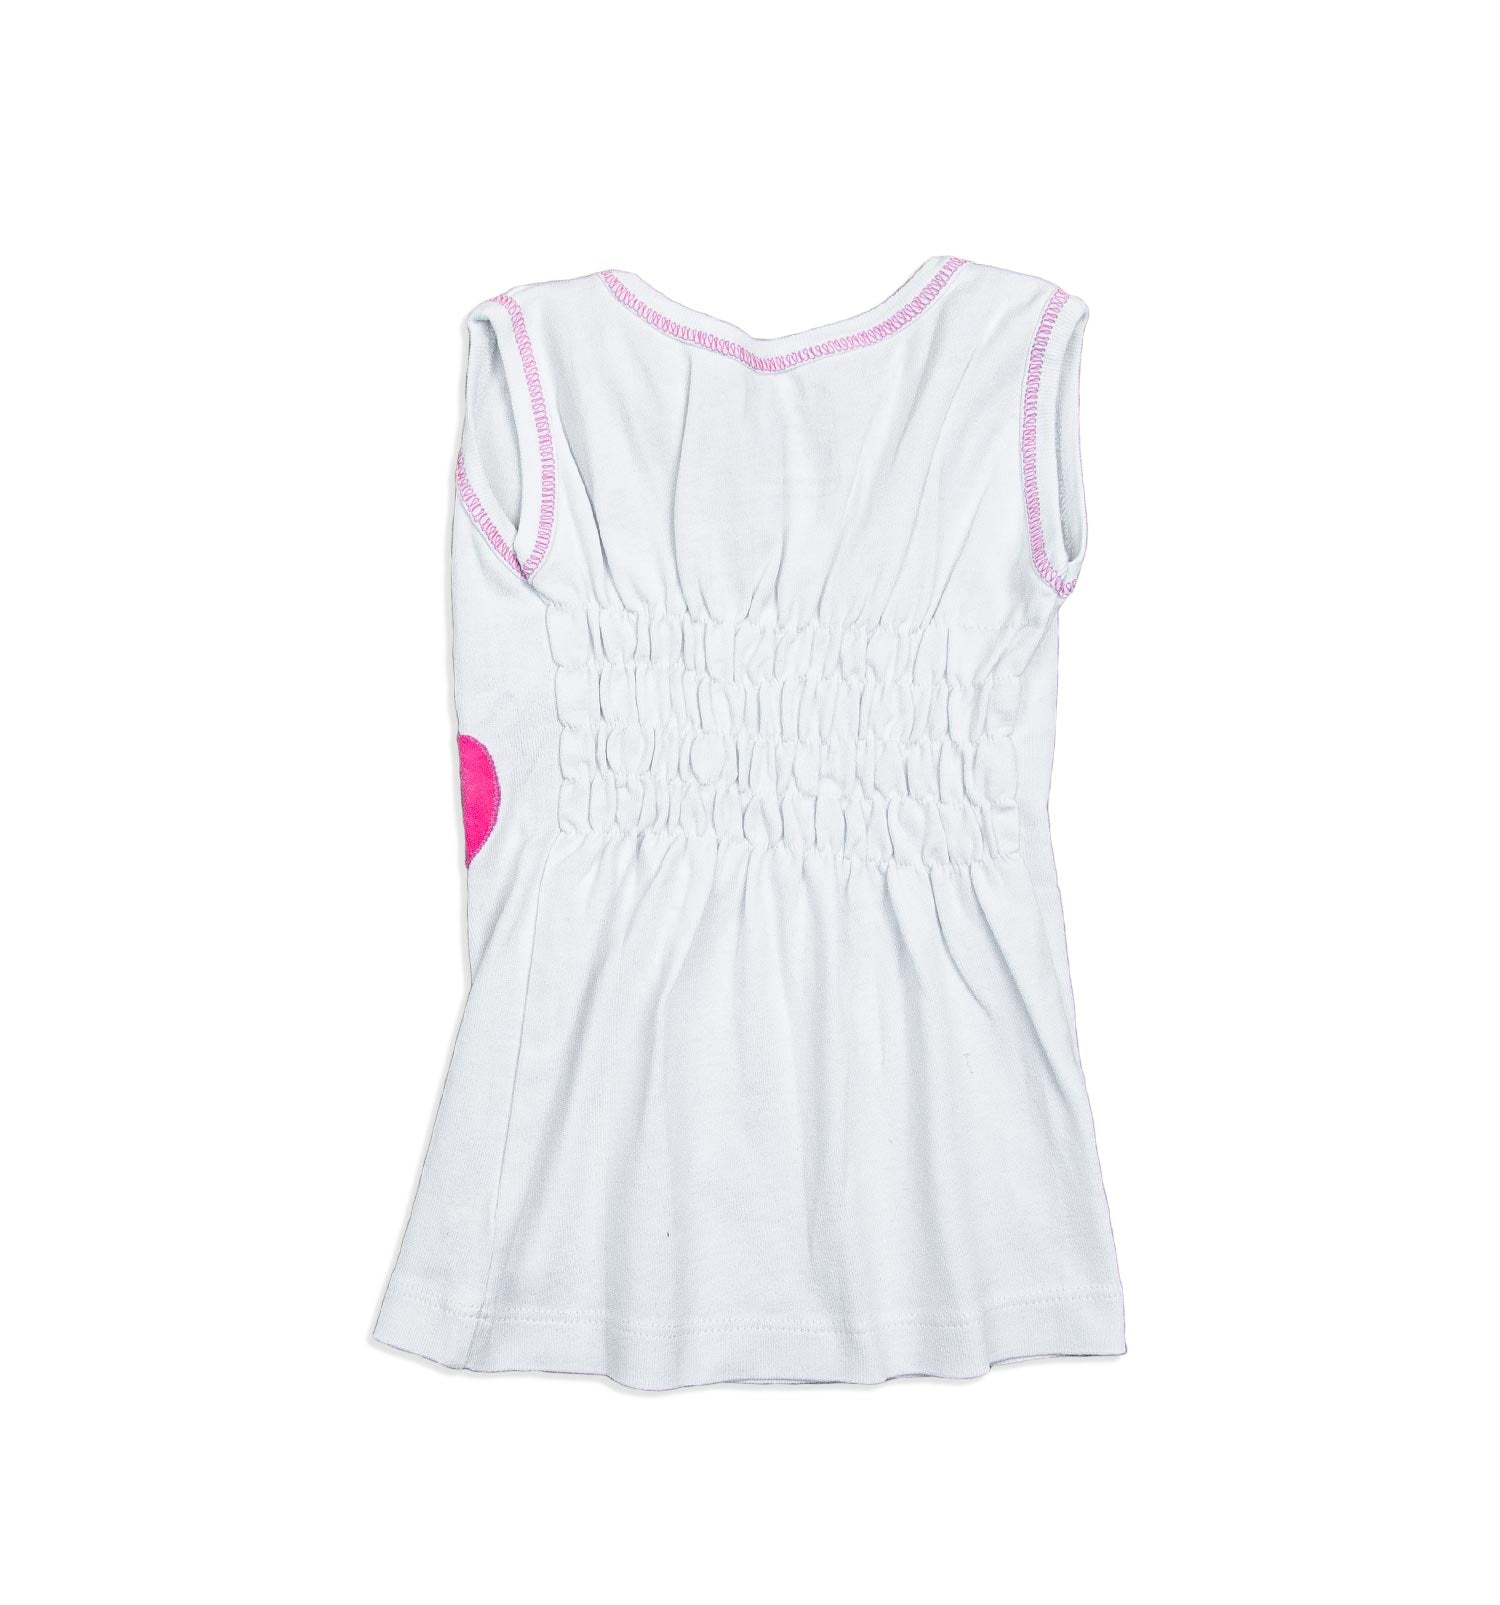 Kinder Träger-Shirt Unterhemd in weiß-pink | sticklett Online Store.